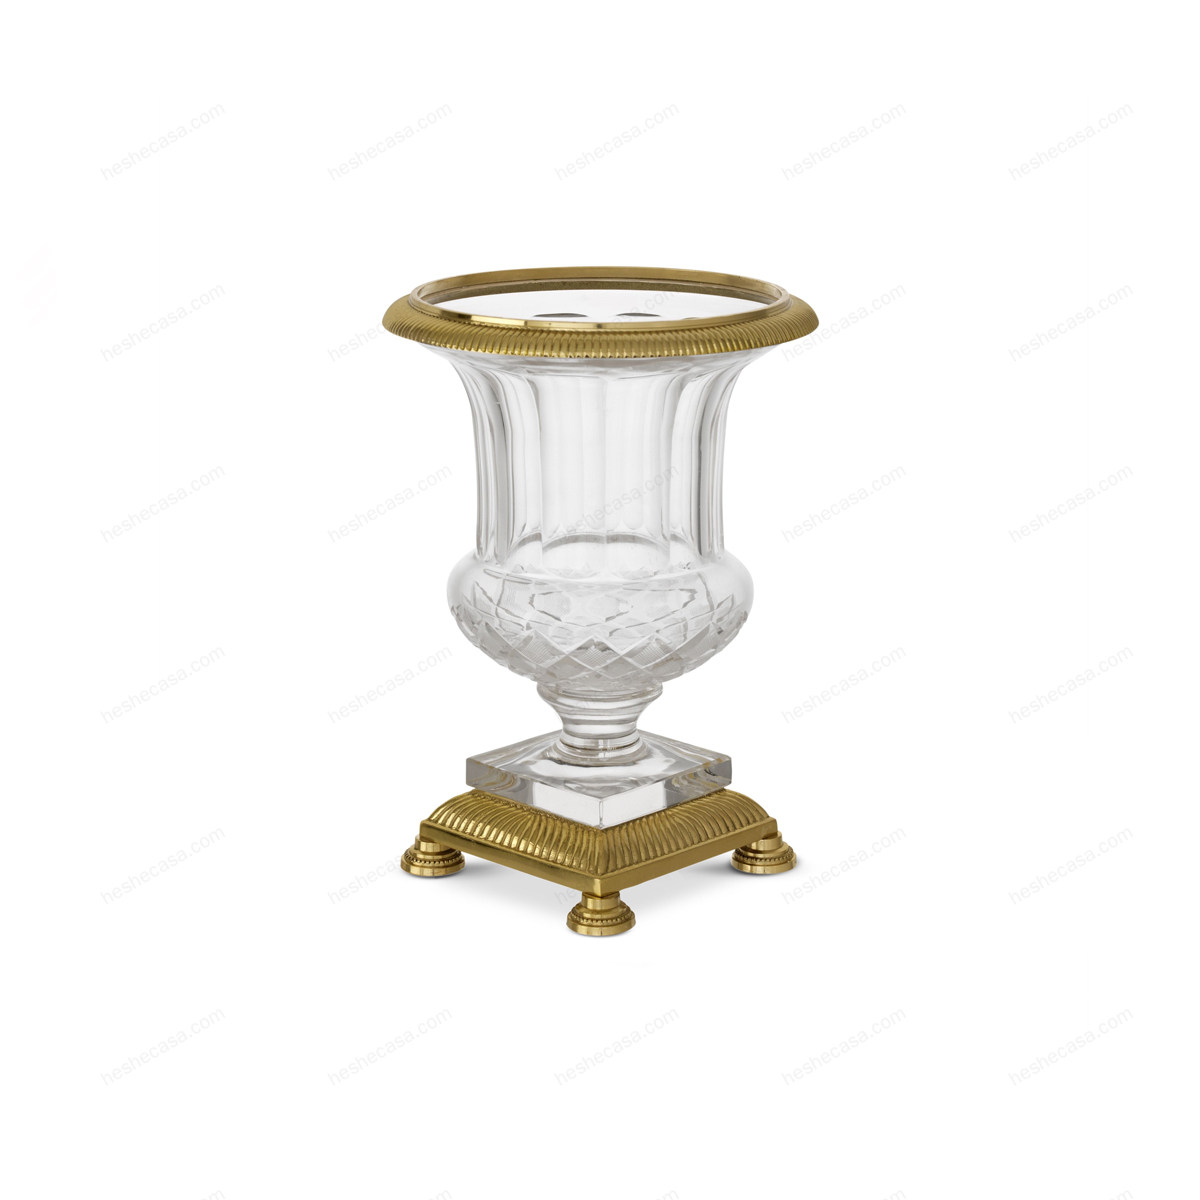 Urn Ephesius花瓶